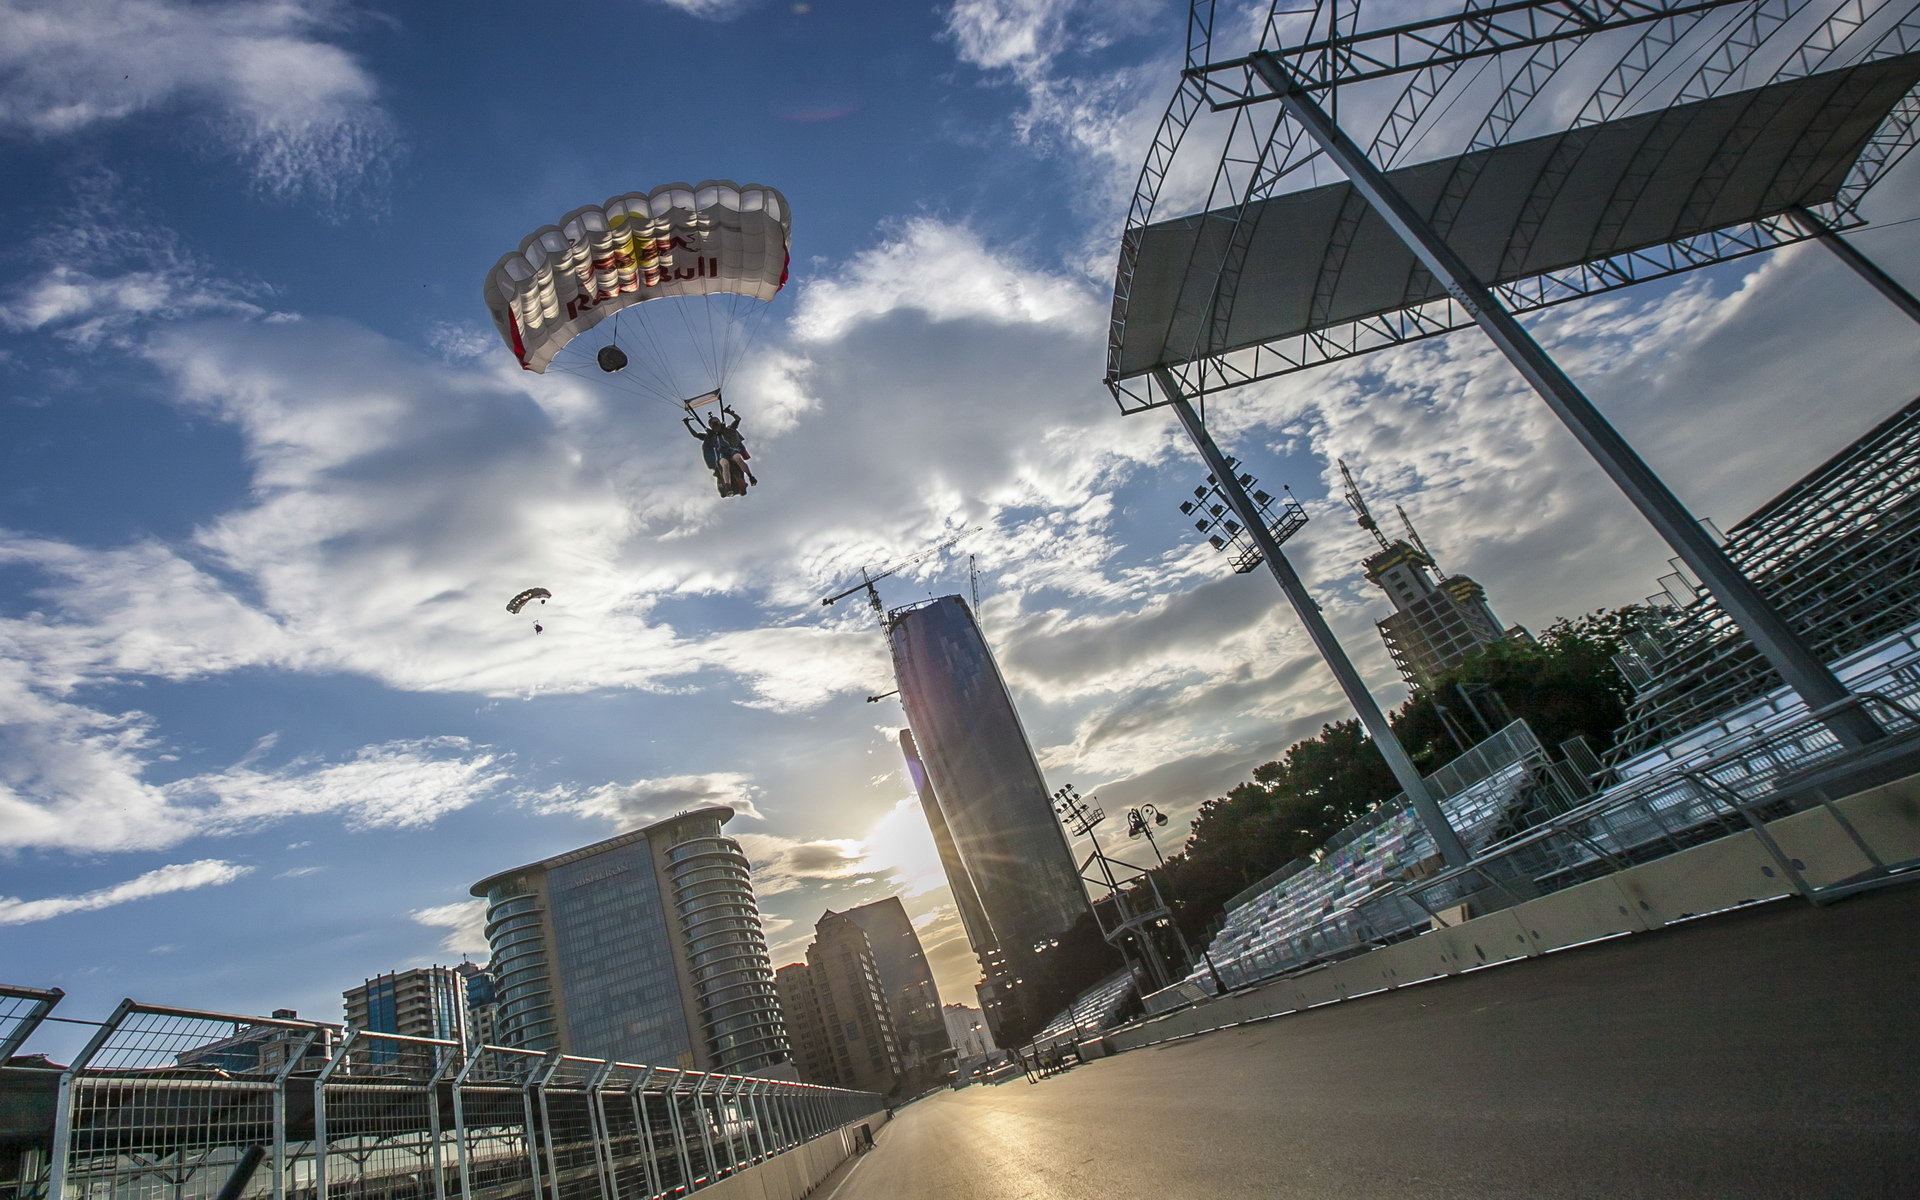 Red Bull a jeho seskok na wingsuit nad okruhem v Baku